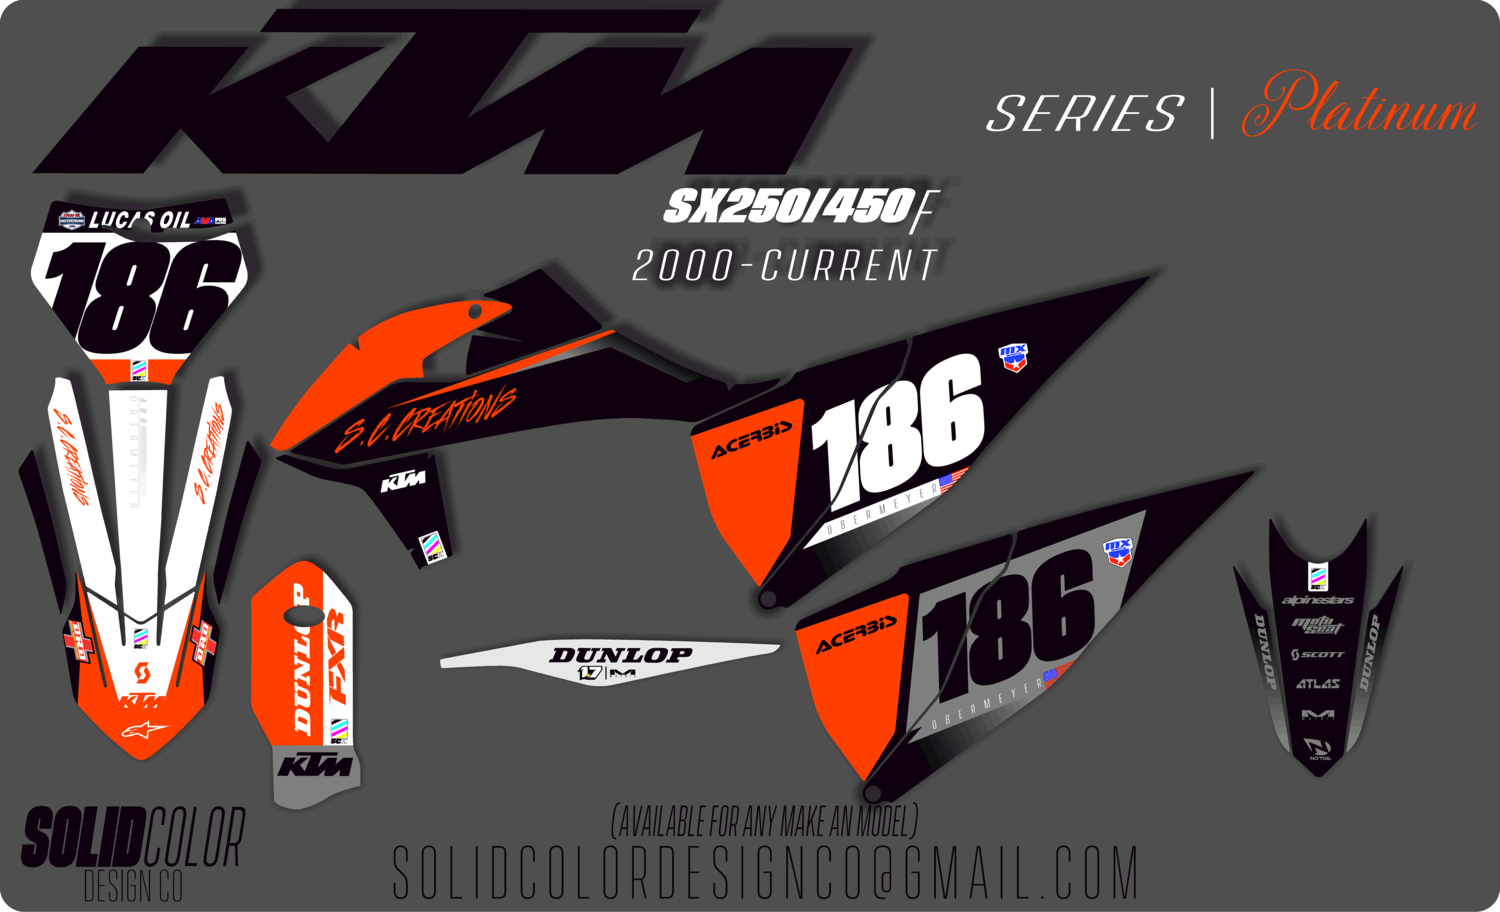 2019 KTM SXf450 "Platinum" Series Graphics Kit